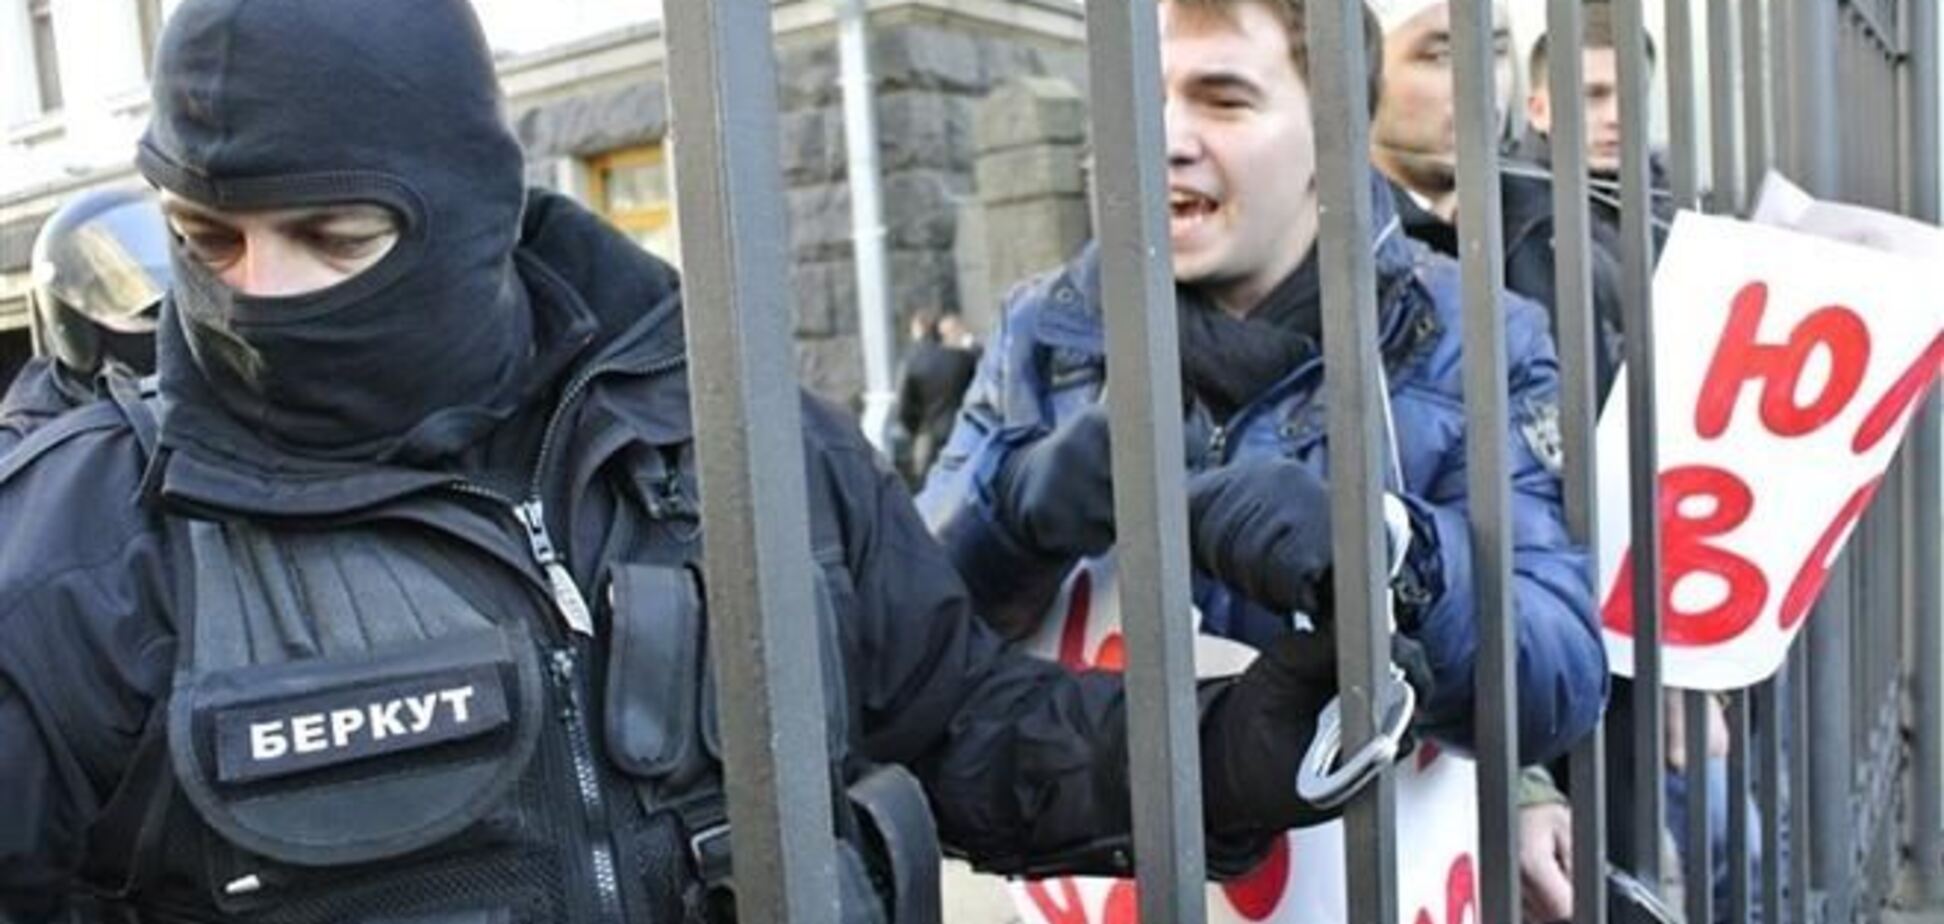 Кандидата в нардепы Лозового арестовали за требование отпустить Тимошенко